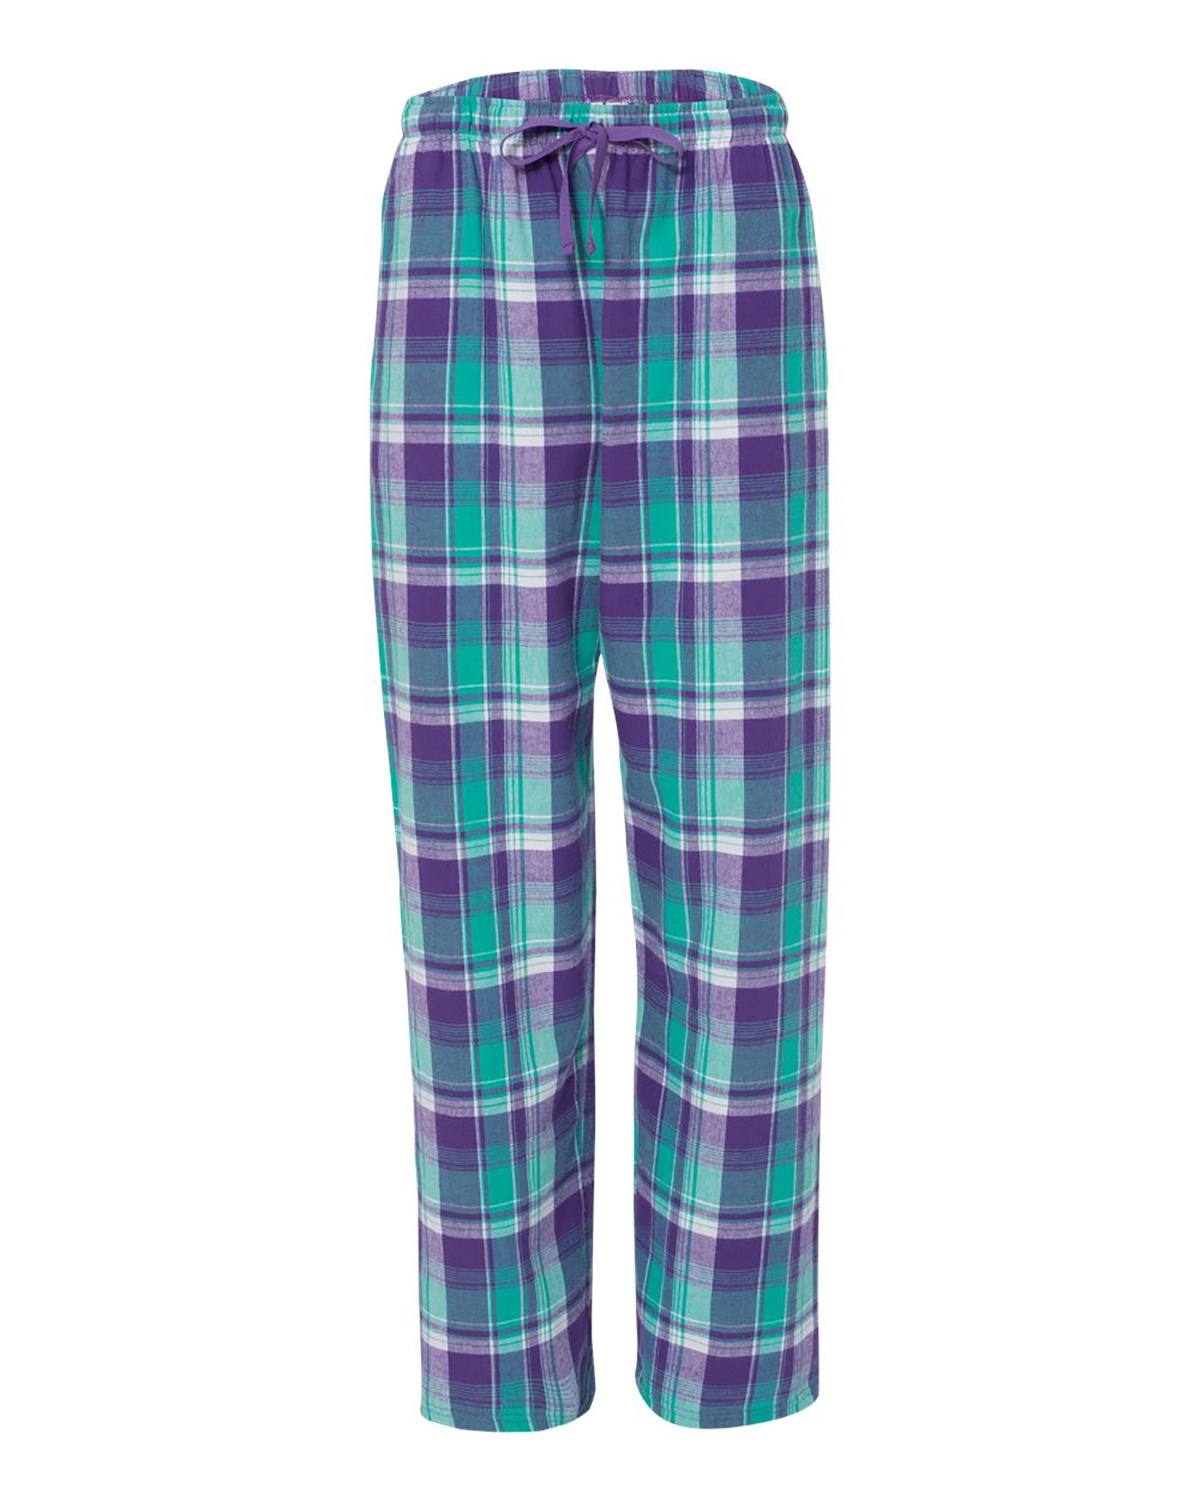 Boxercraft Flannel Pants Size Chart